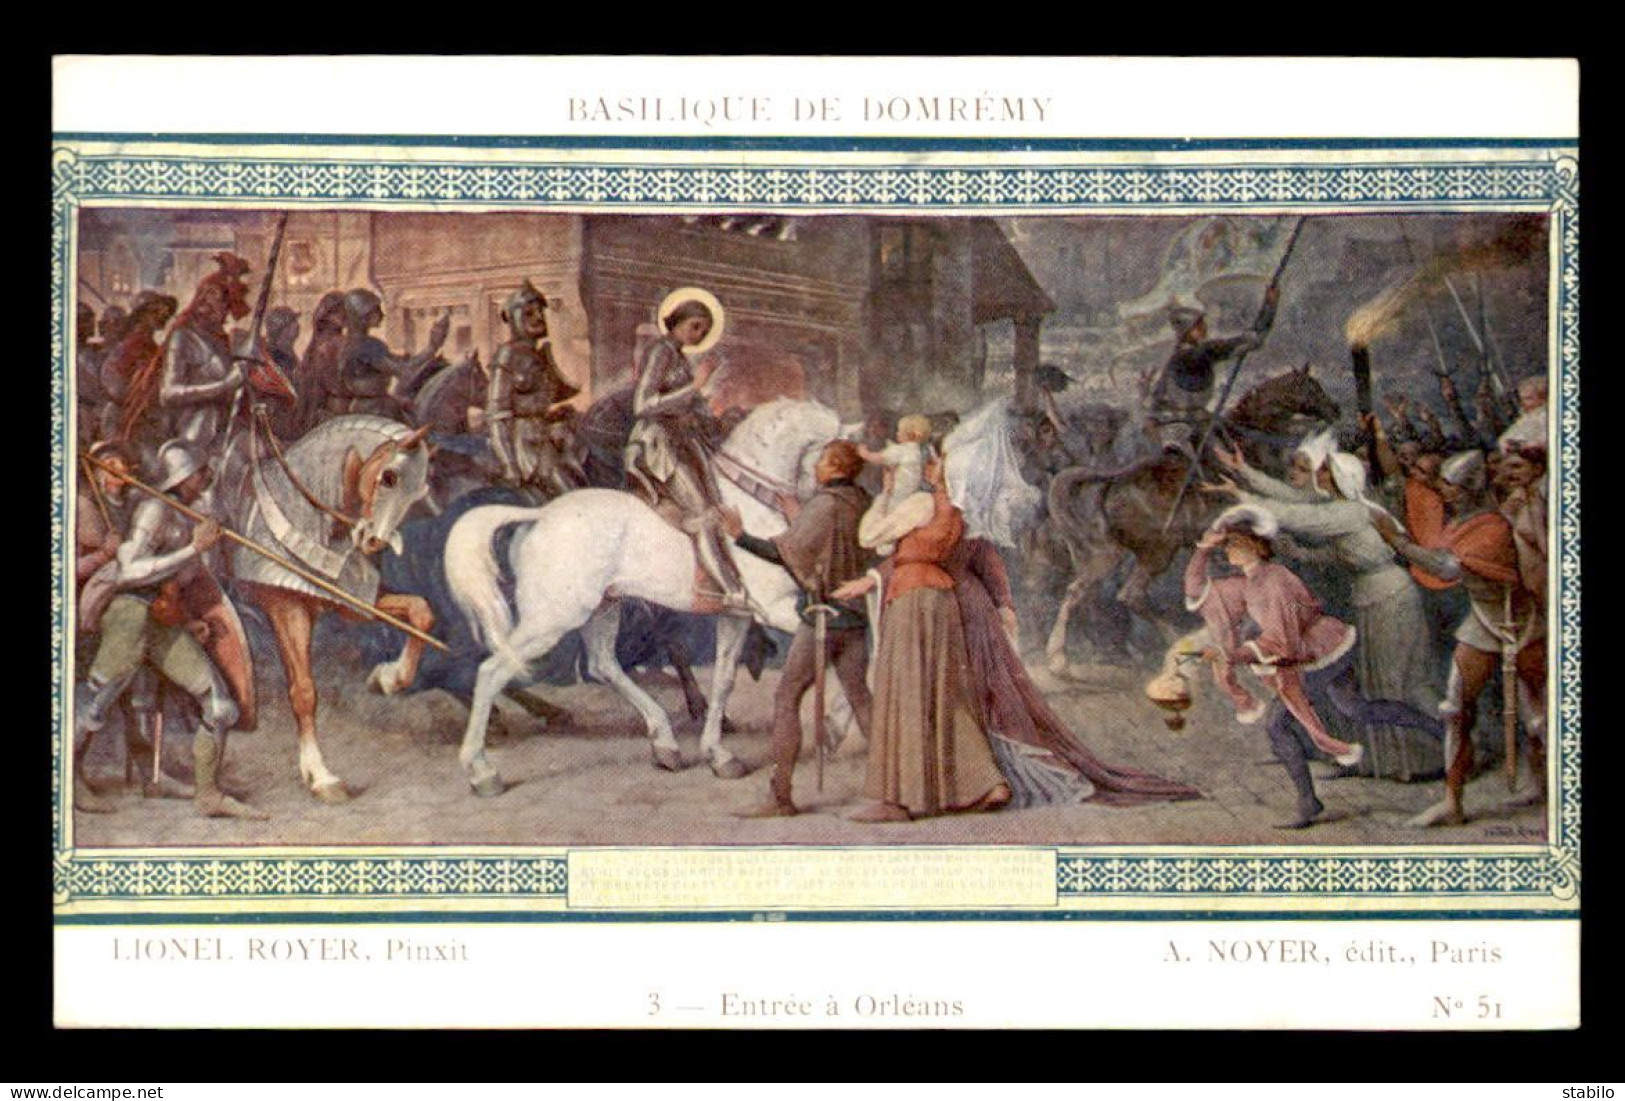 JEANNE D'ARC - TABLEAU DE LIONEL ROYER  A LA BASILIQUE DE DOMREMY  - ENTREE A ORLEANS - Berühmt Frauen